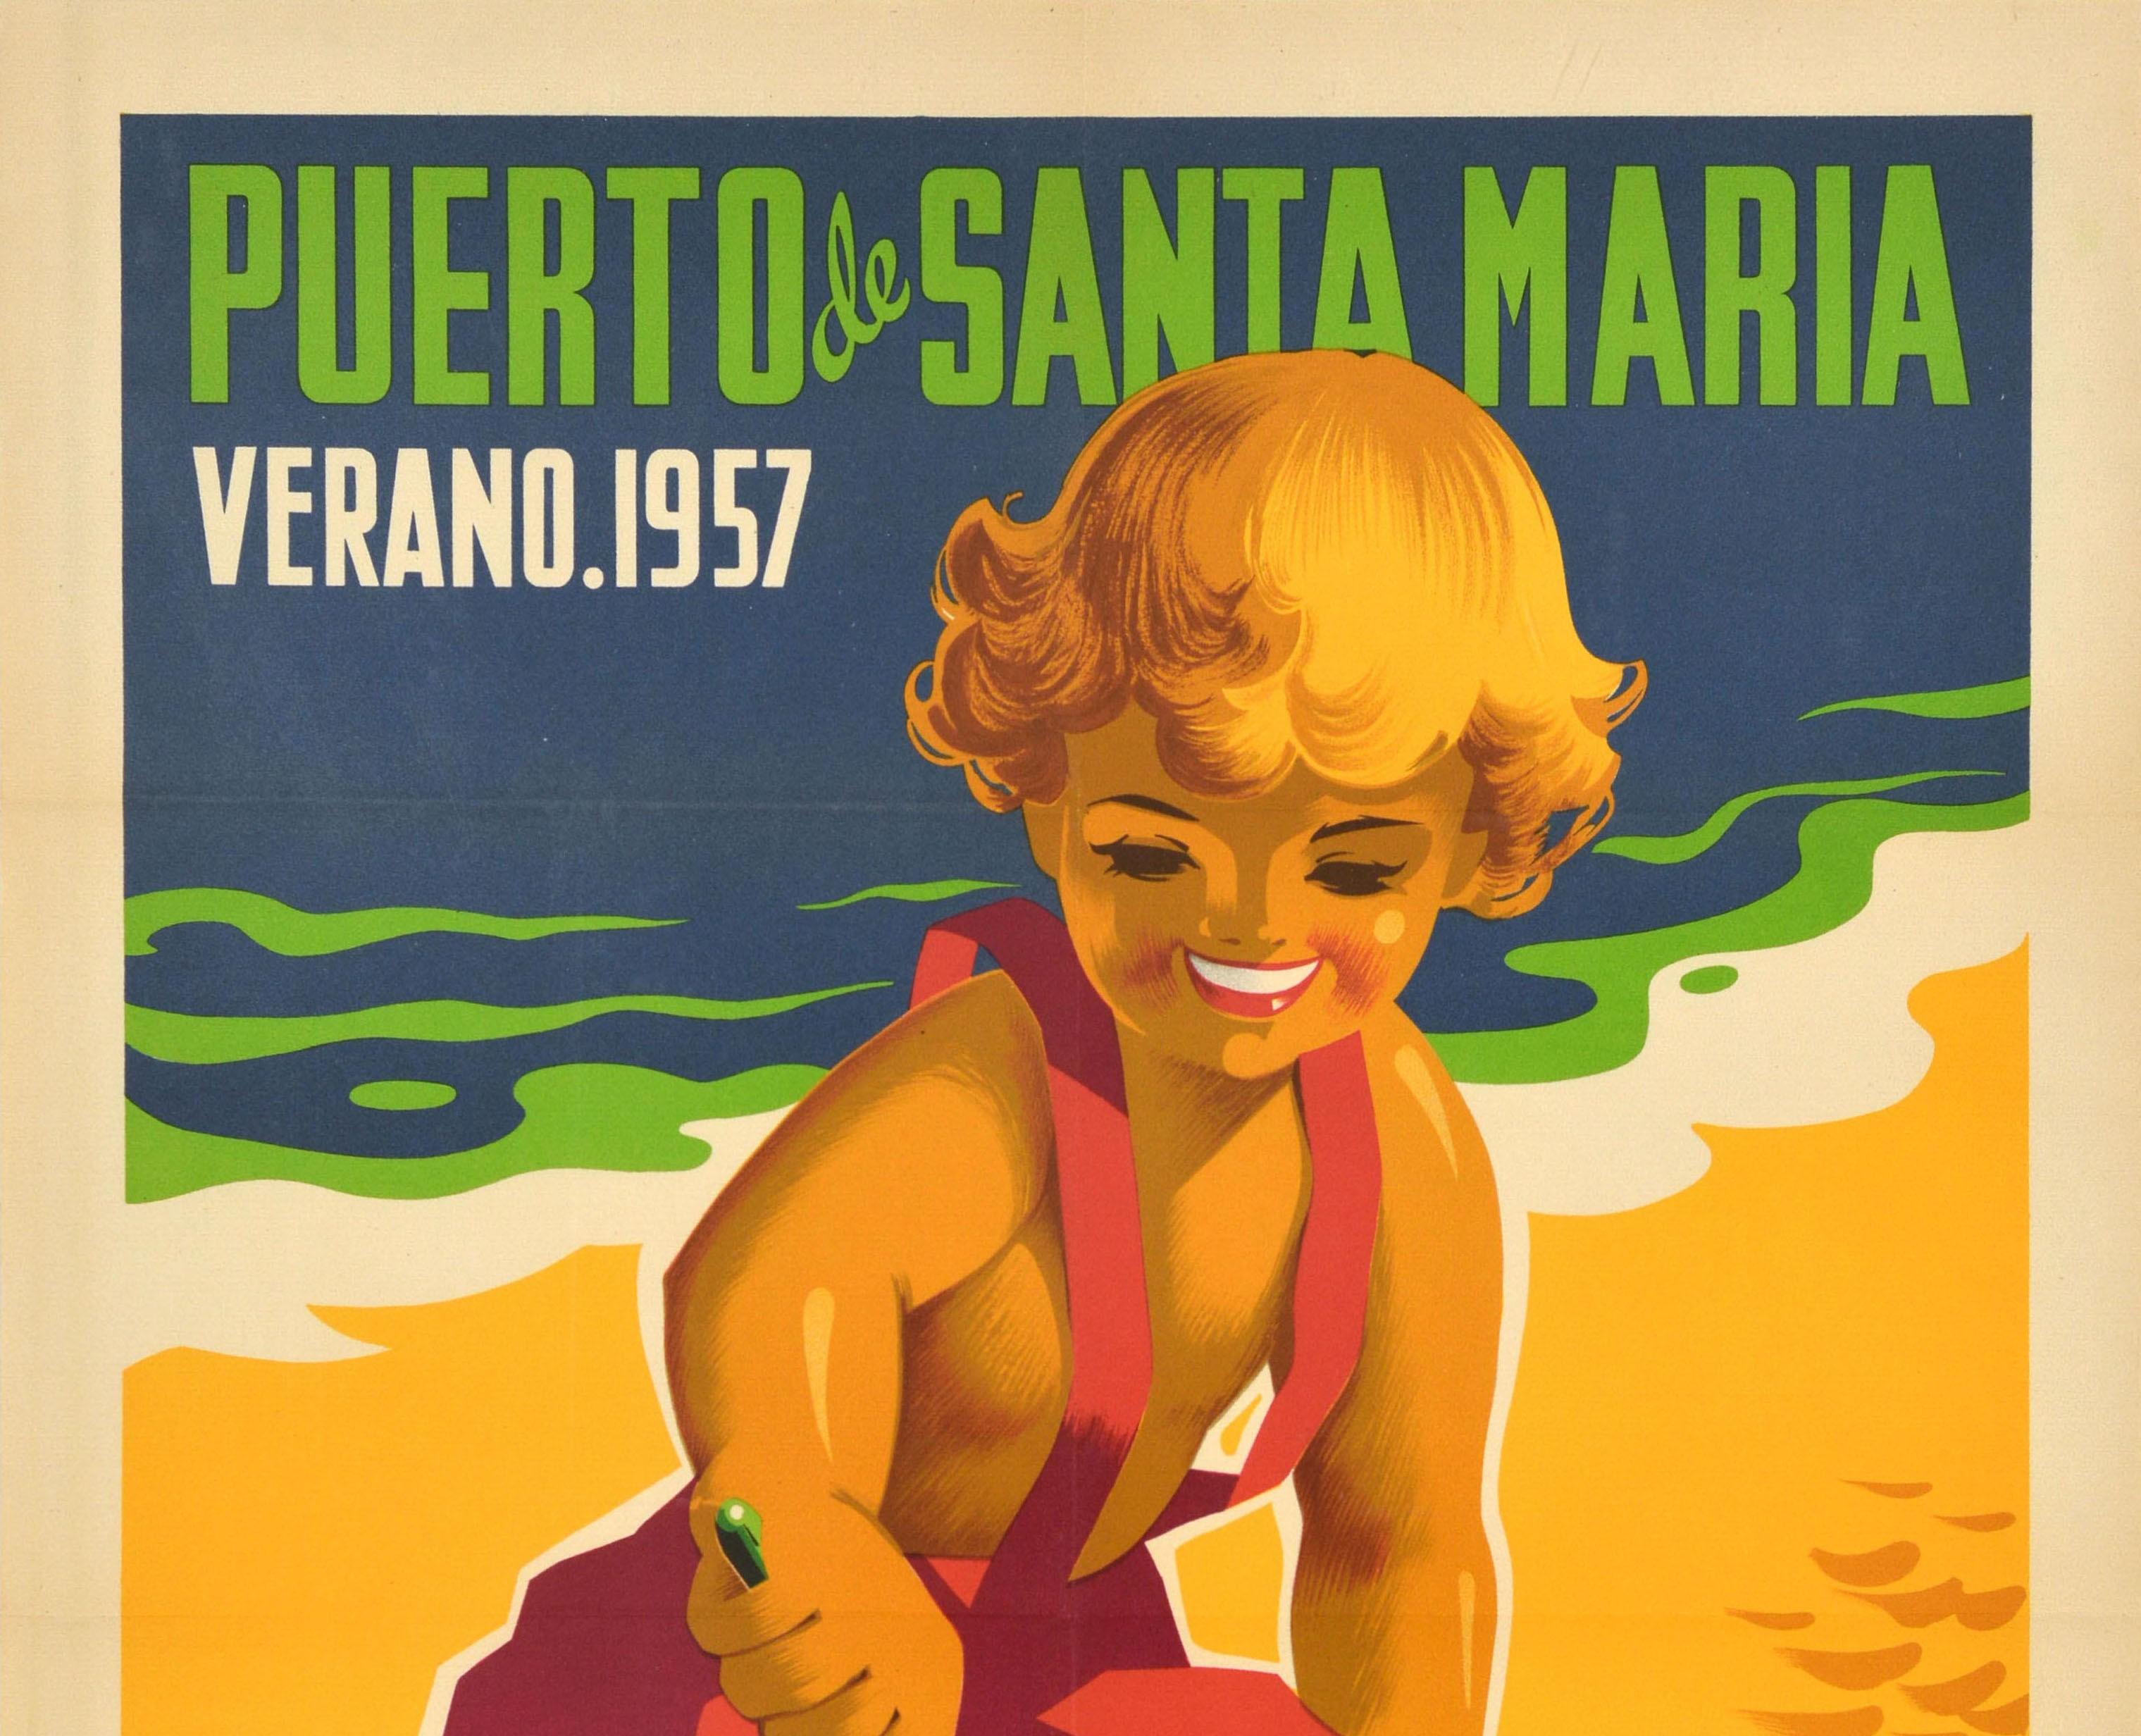 Original-Sommer-Reiseplakat, das für die Strände von Cádiz in Spanien wirbt - Puerto de Santa Maria Verano 1957 Playas de Valdelagrana La Puntilla y Fuenterrabia - mit einer großartigen Illustration eines glücklichen Ferienkindes in roter Latzhose,